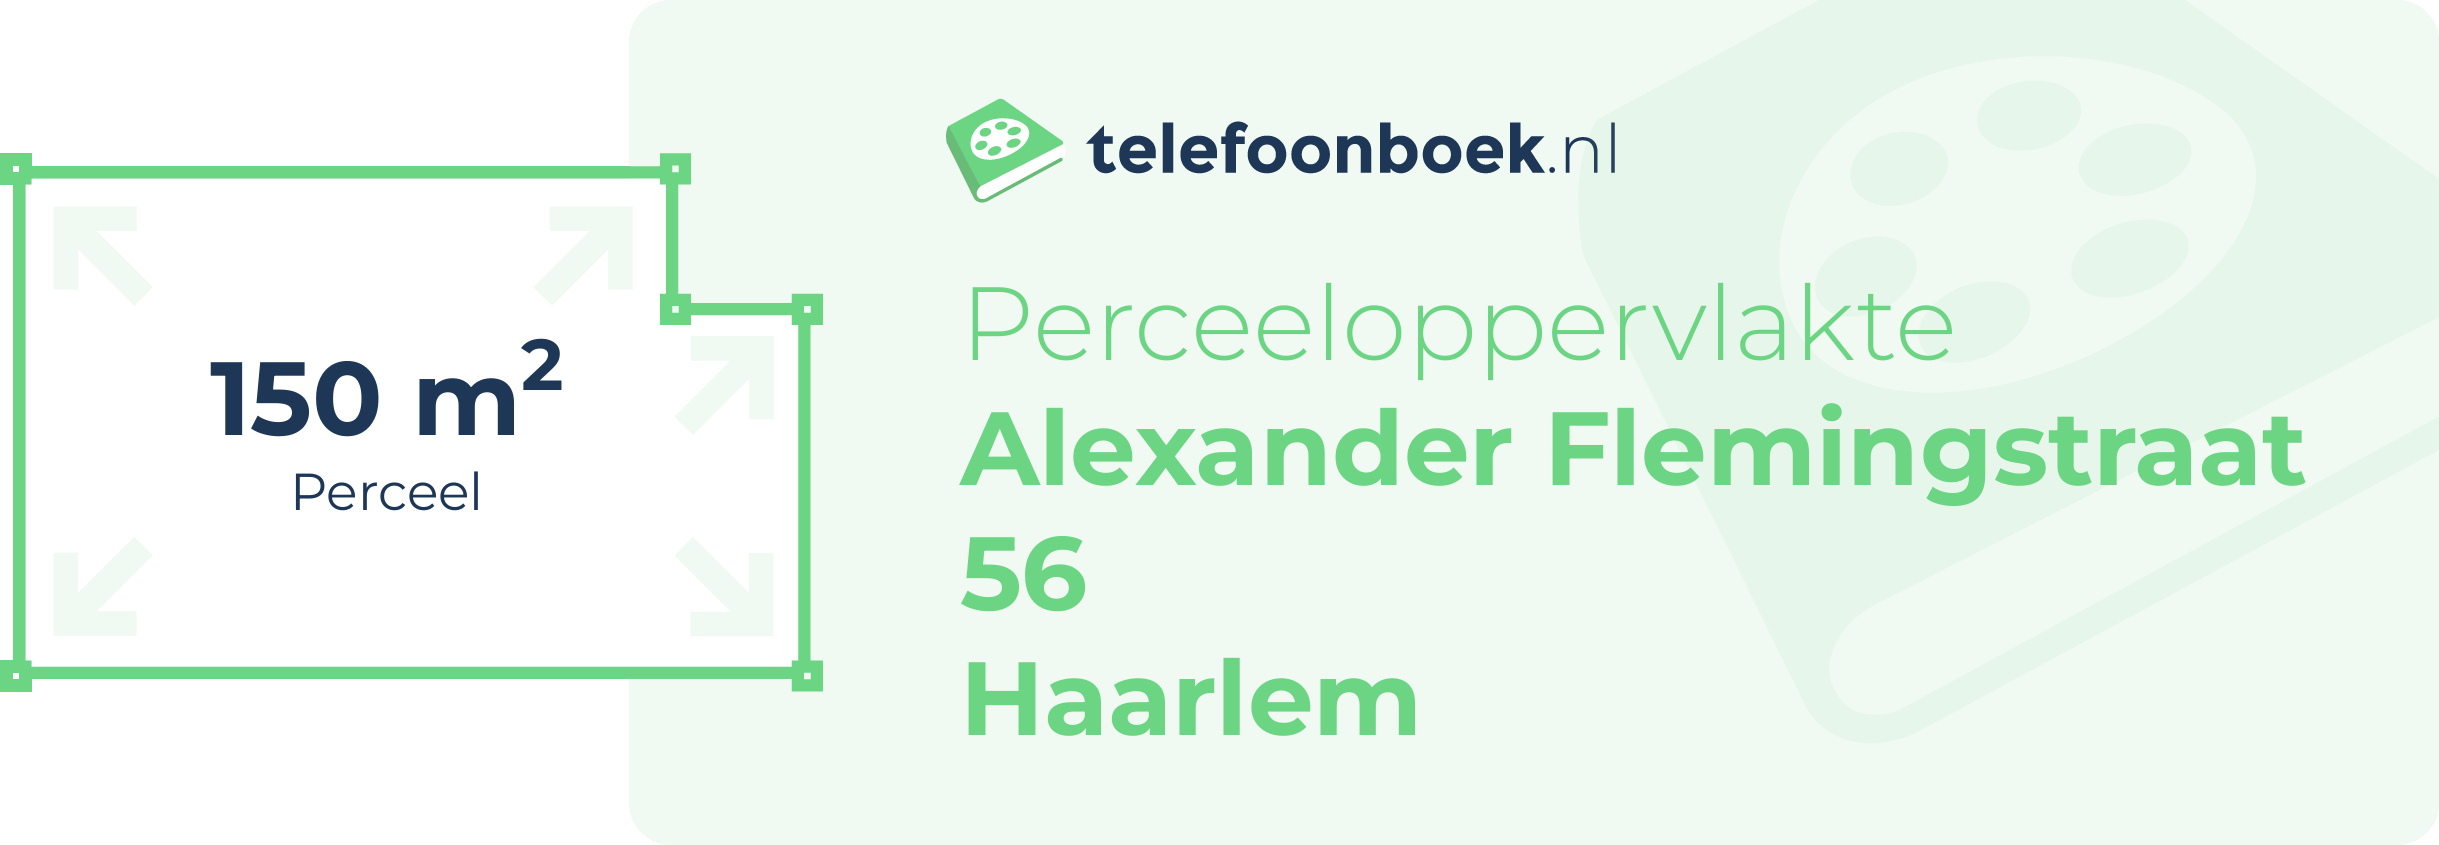 Perceeloppervlakte Alexander Flemingstraat 56 Haarlem